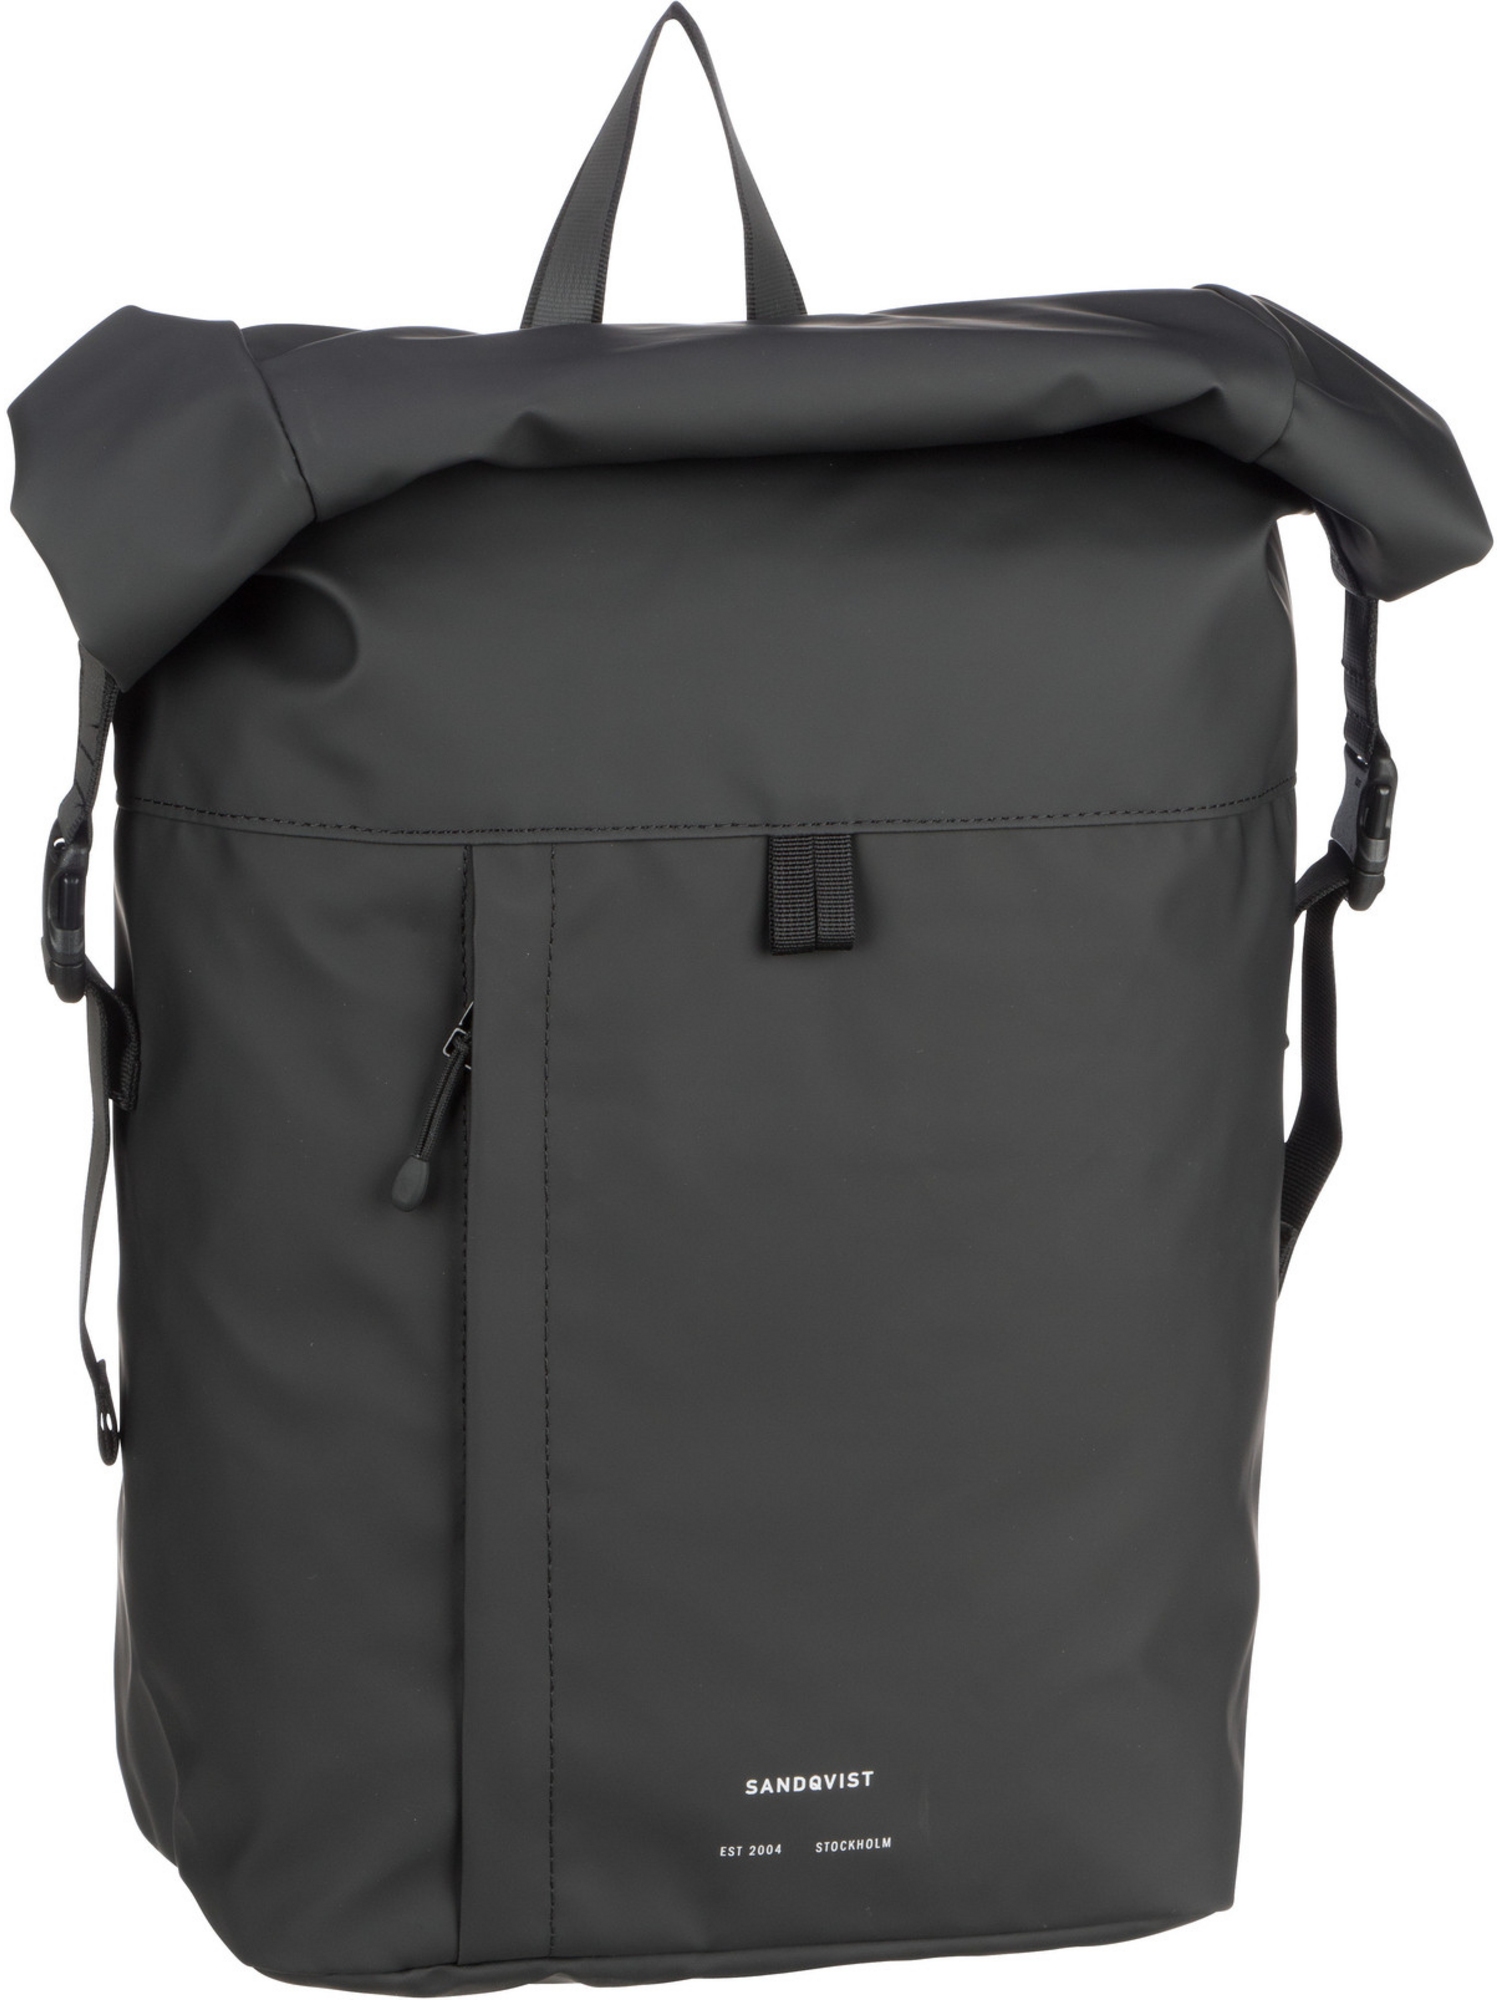 Рюкзак SANDQVIST/Backpack Konrad Backpack, черный рюкзак sandqvist konrad black